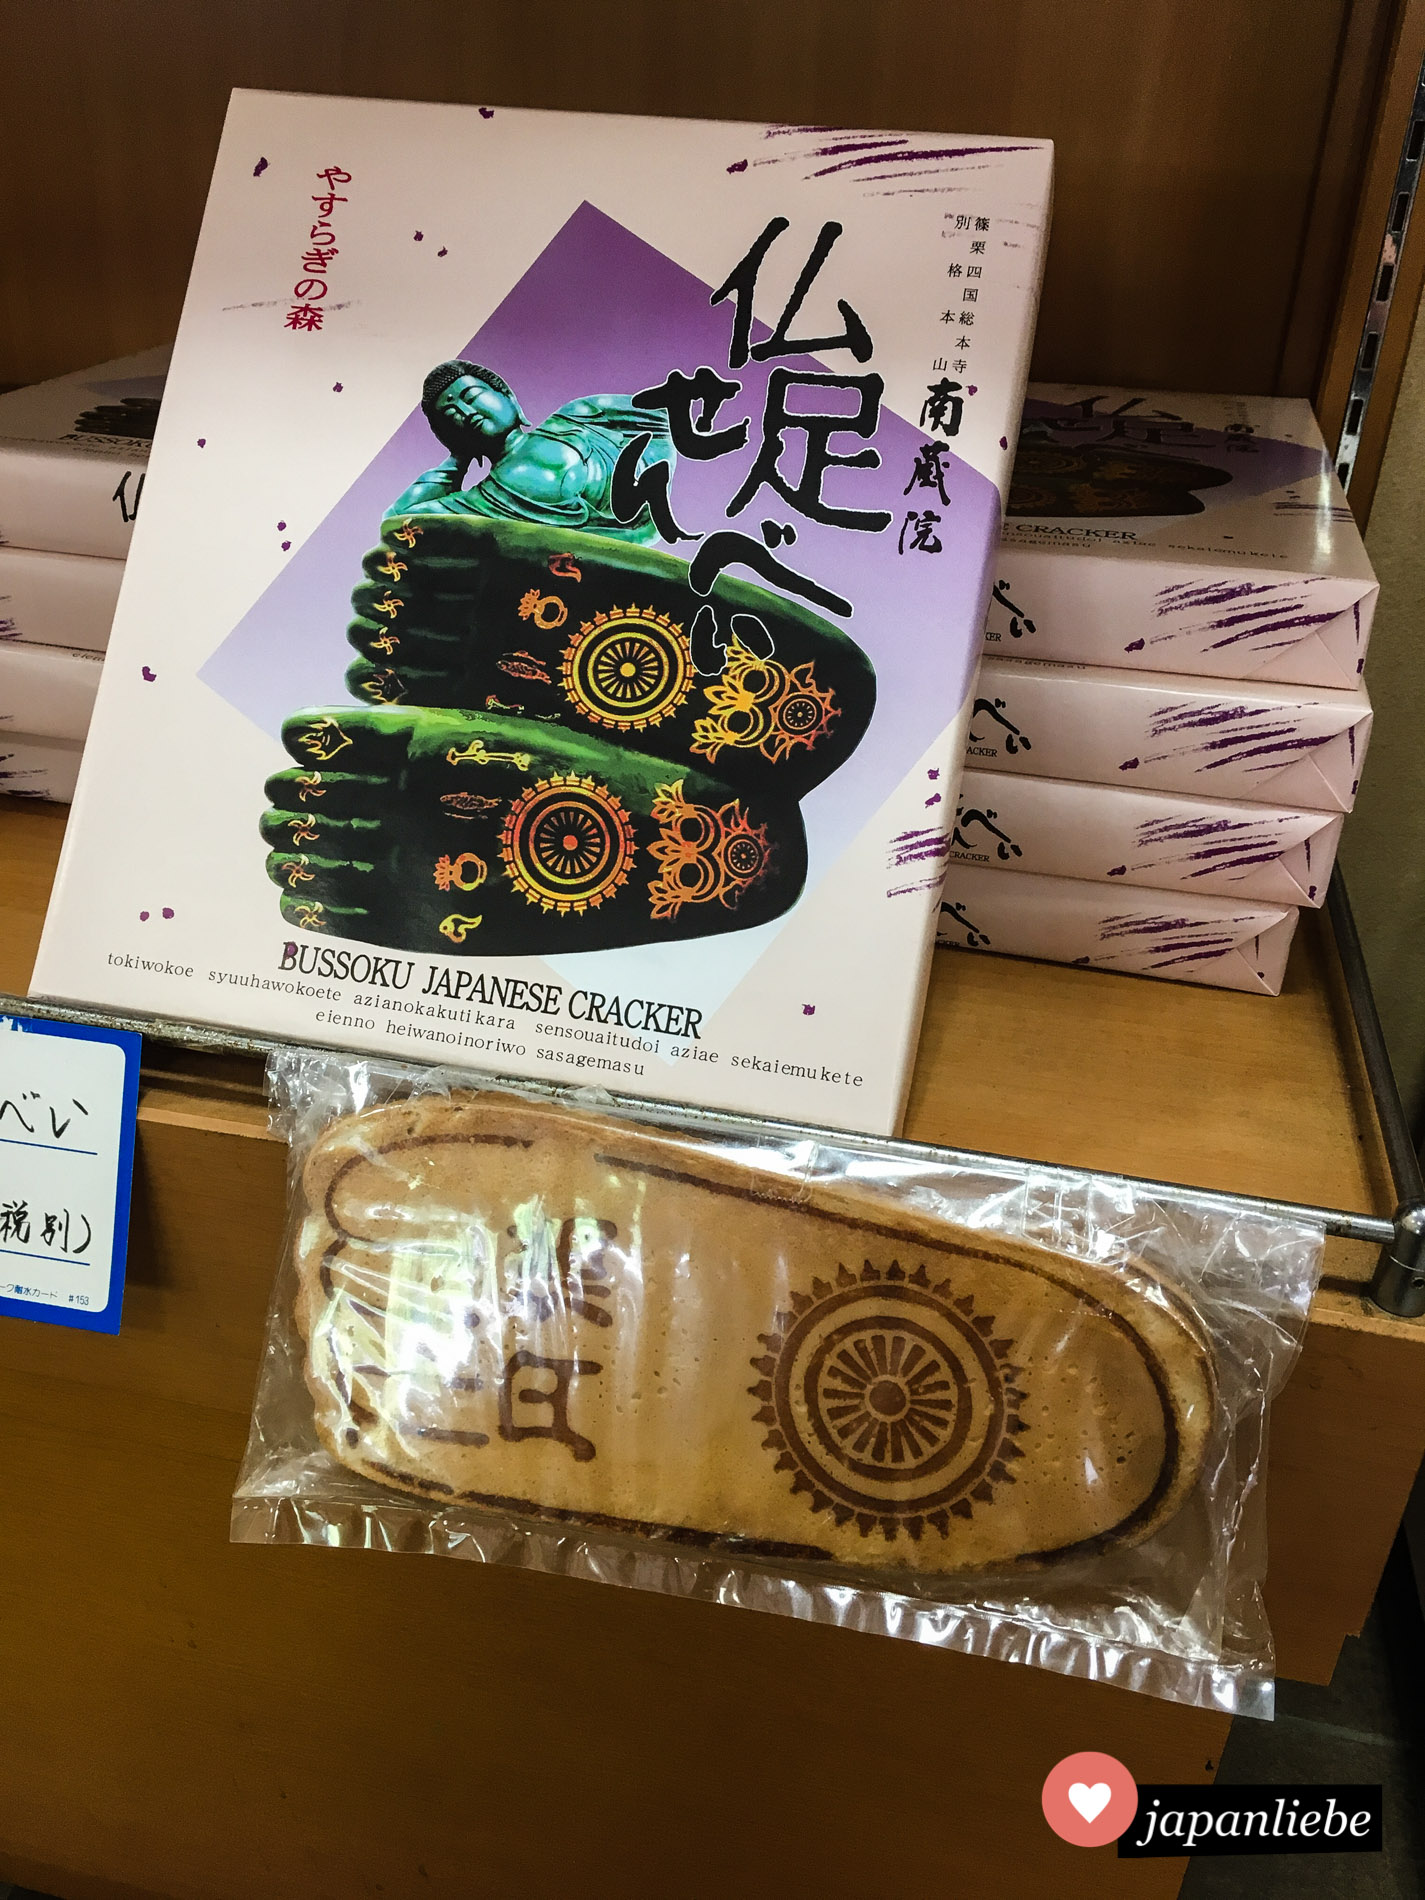 Only in Japan: Buddhas Fußsohlen als Reiscracker.